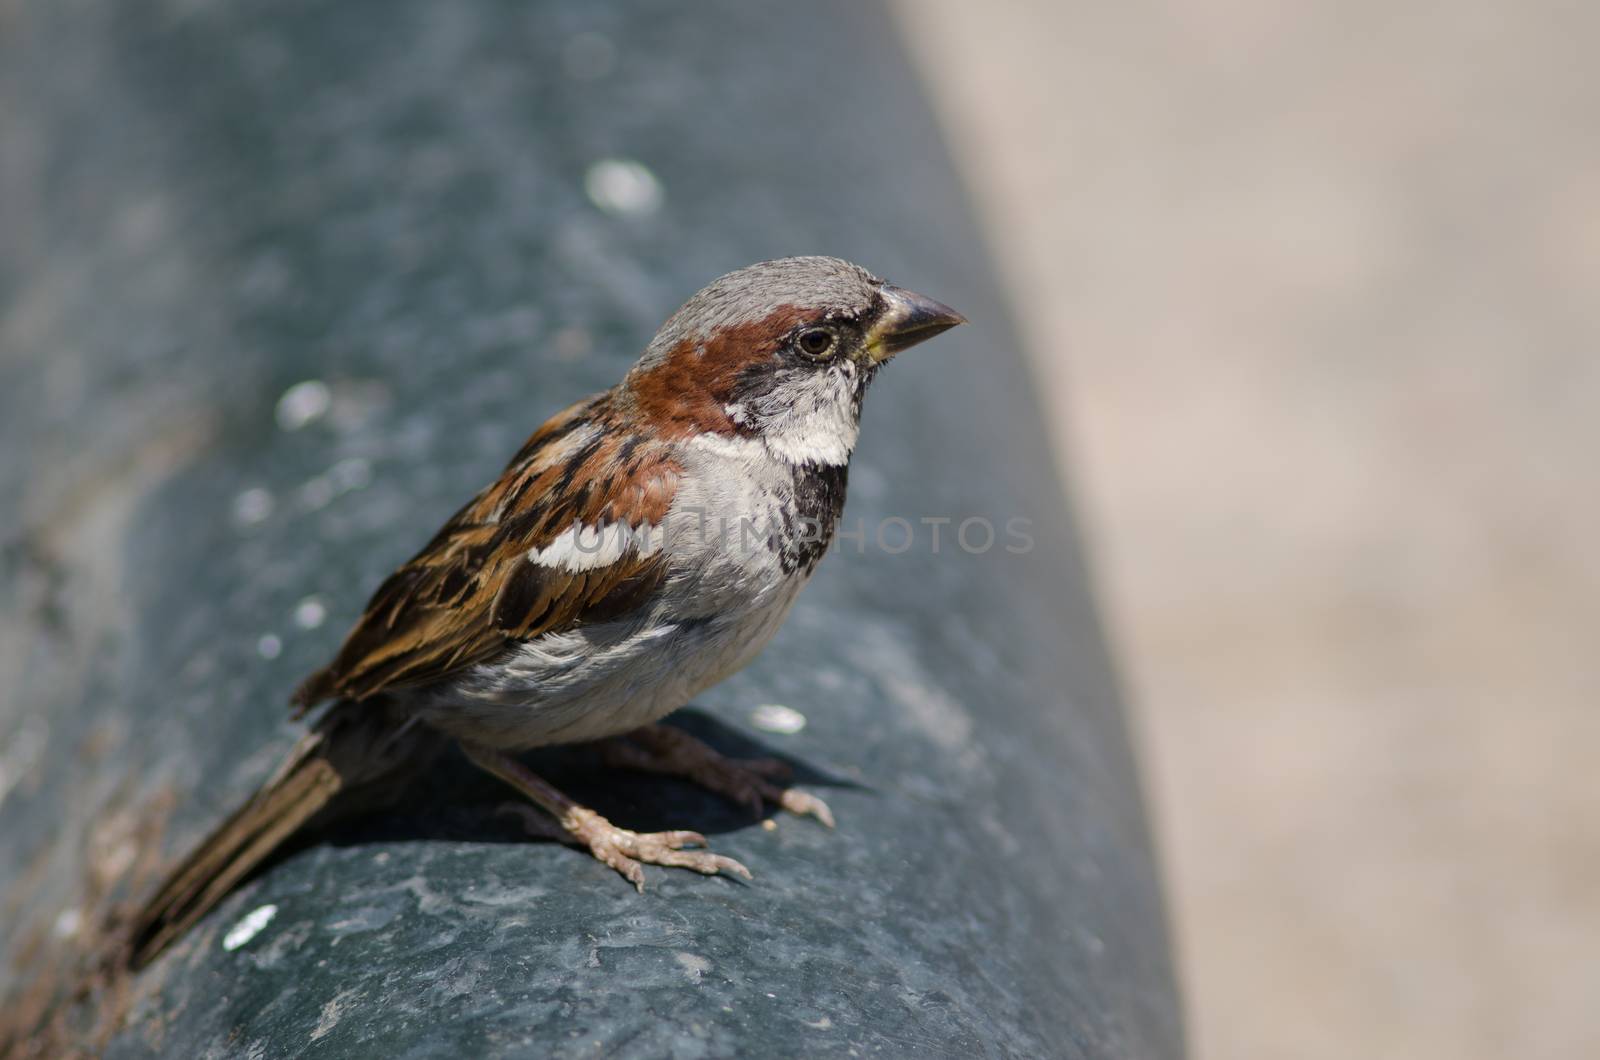 House sparrow in the Arm Square of Santiago de Chile. by VictorSuarez